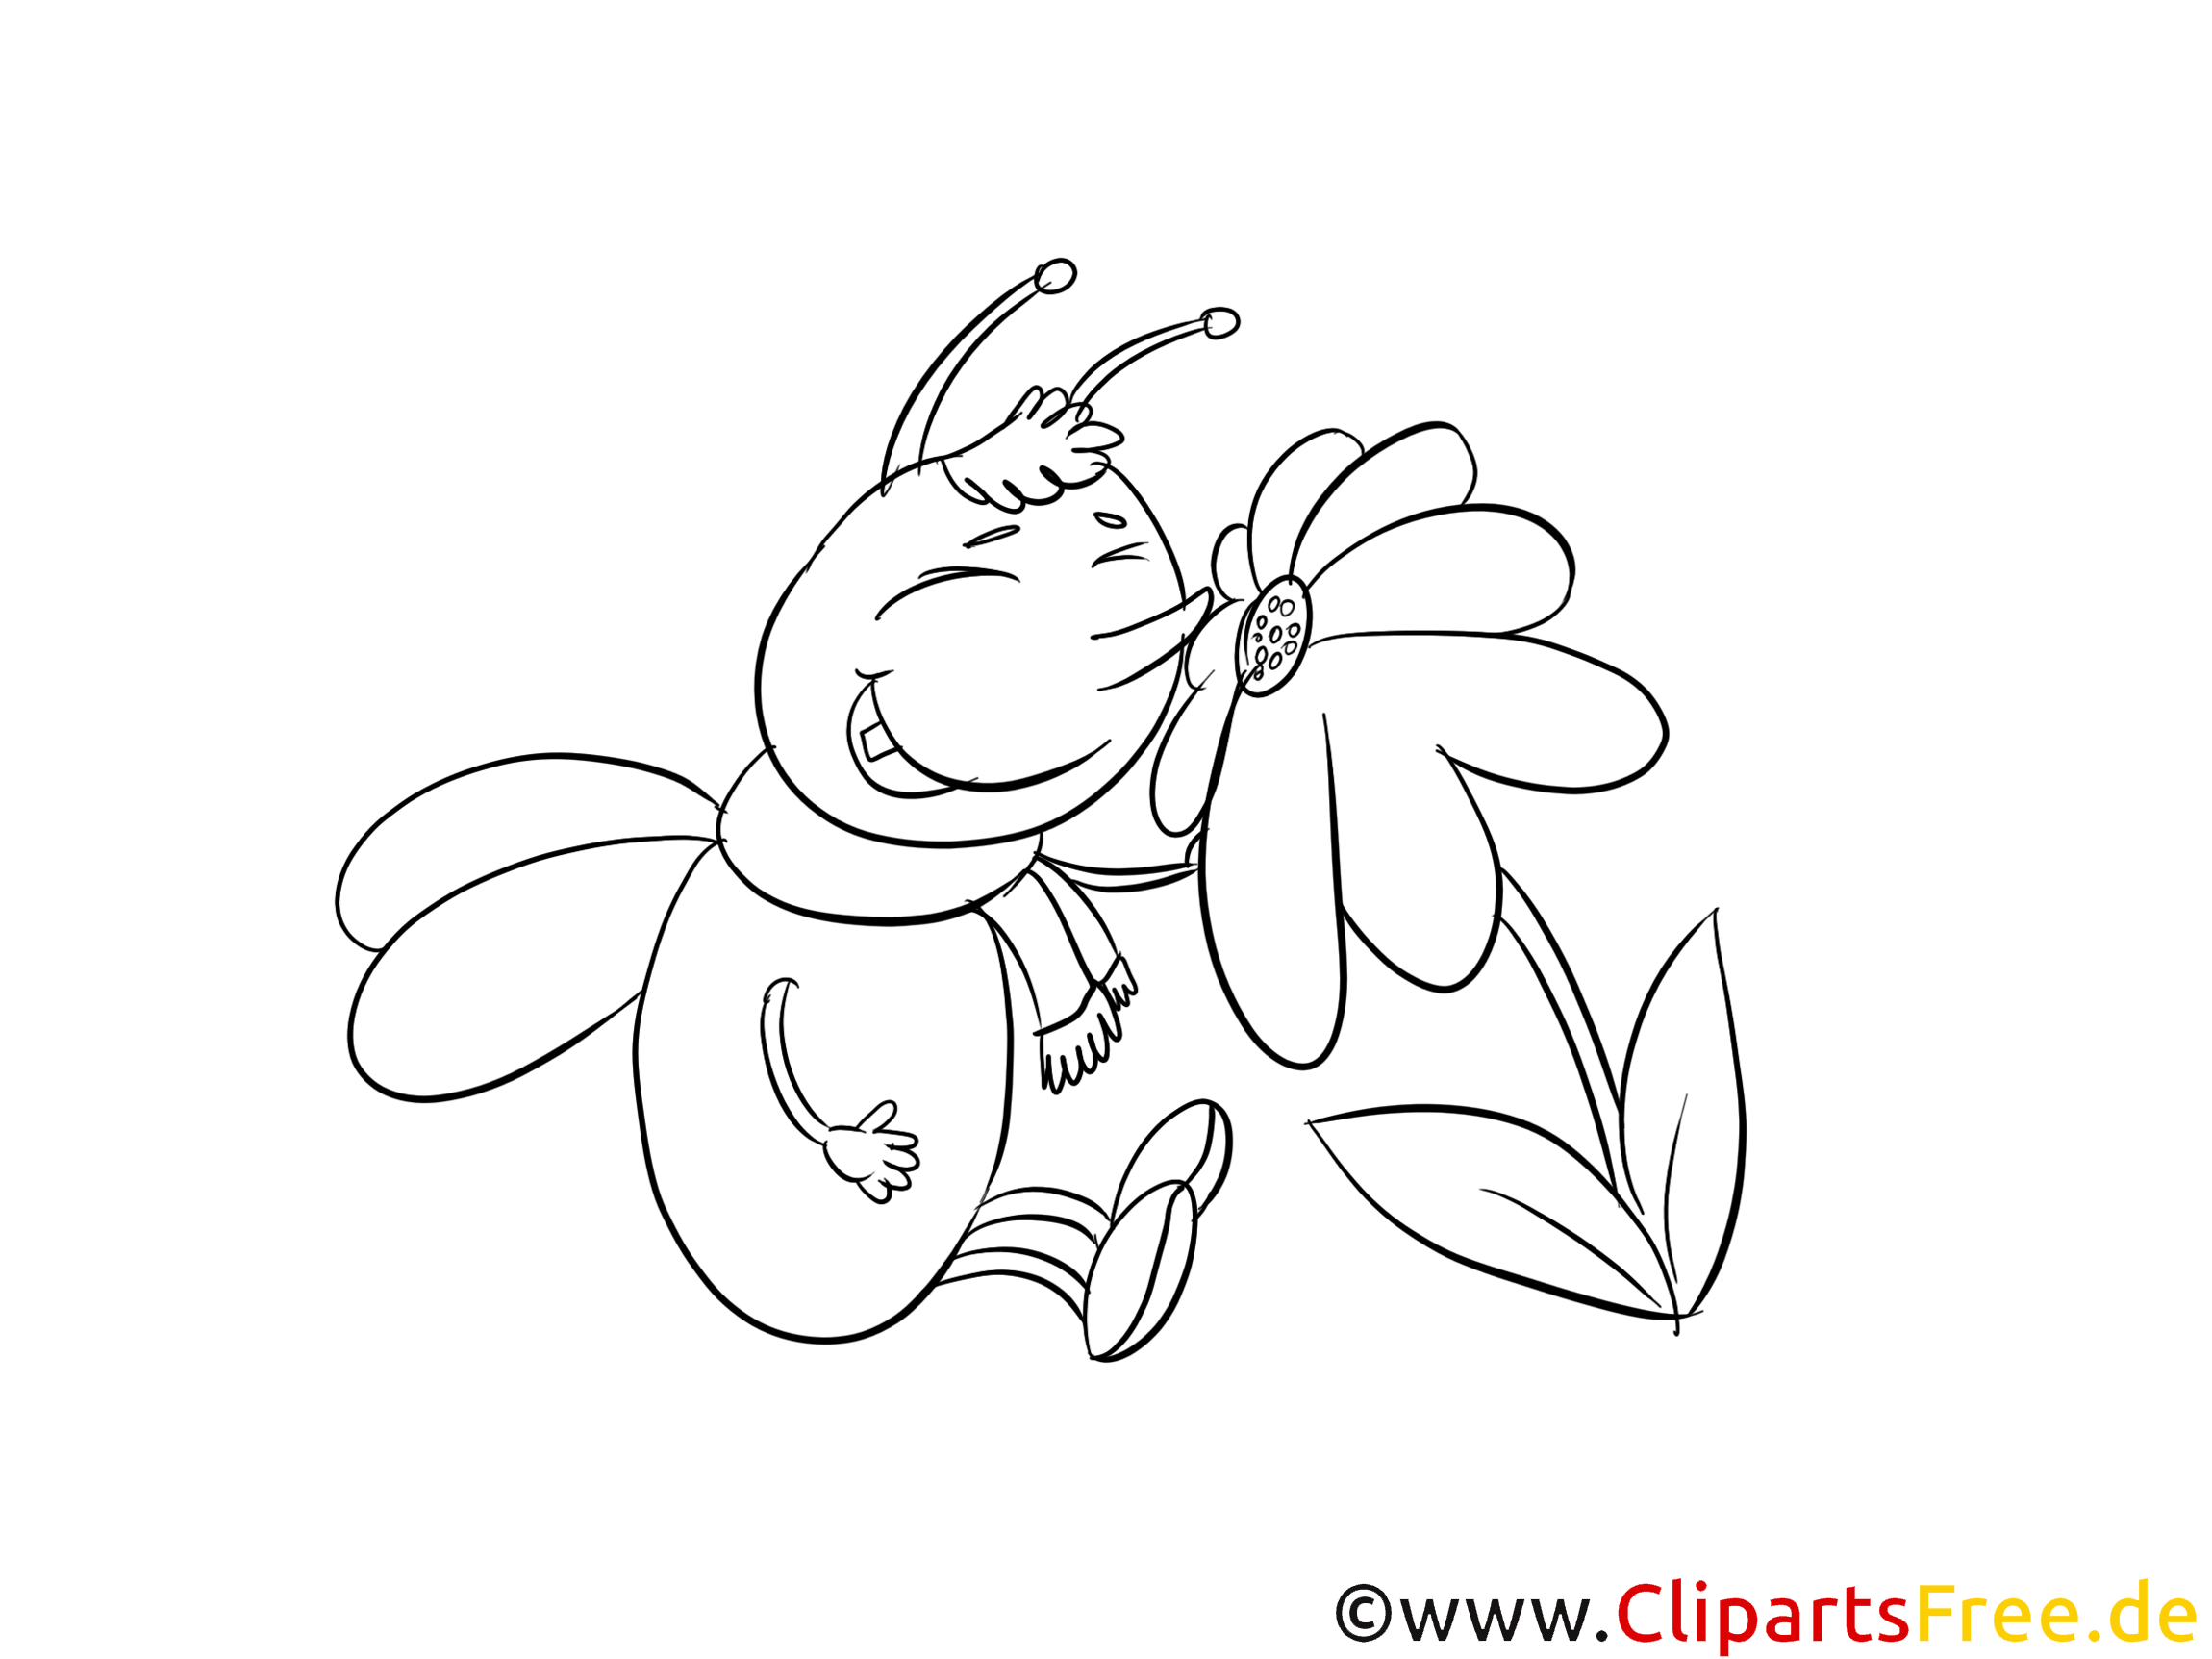 Abeille illustration – Insects à colorier